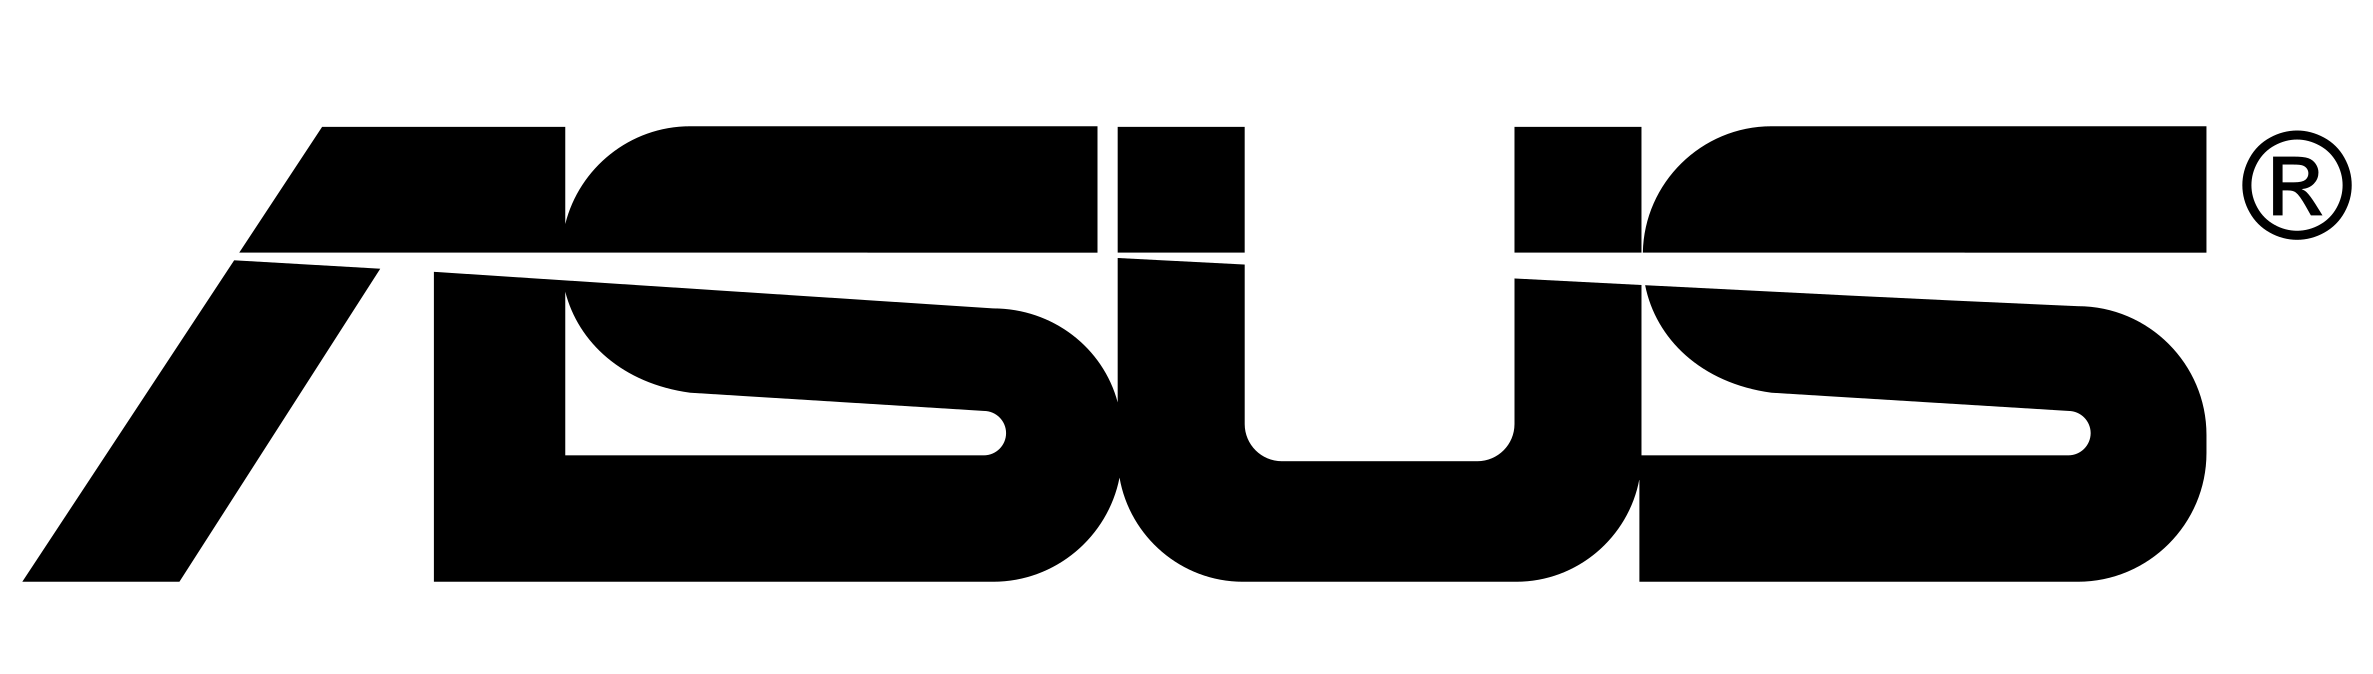 Asus Logo Black - KibrisPDR